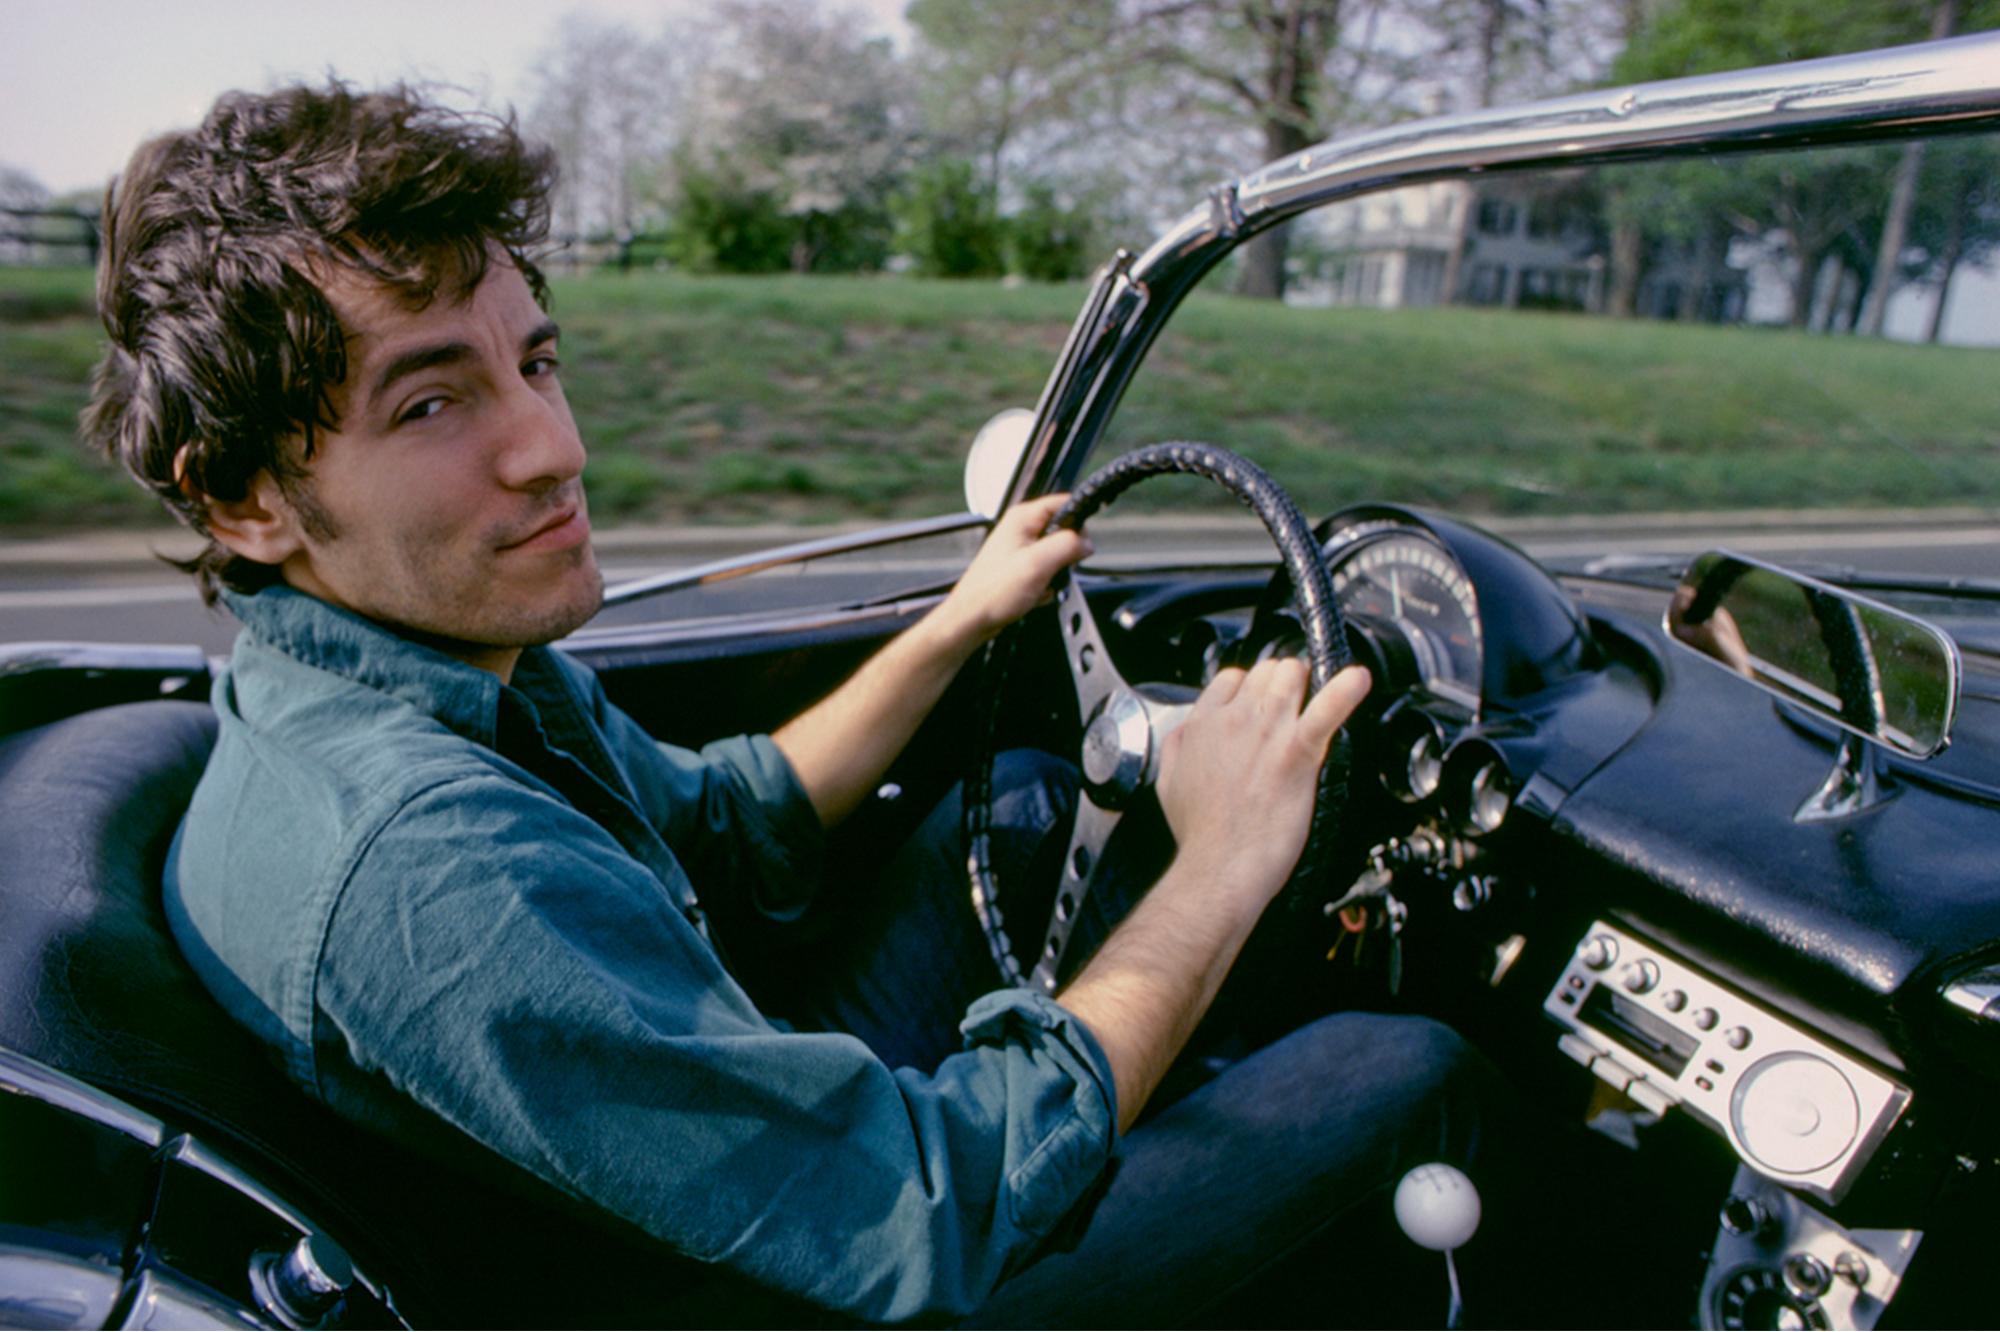 Tirage 16x20"" signé de Bruce Springsteen au volant de sa voiture bien-aimée en 1978 par Lynn Goldsmith.

Édition limitée au nombre de 2/20

Tirage moderne de type C. Disponible pour une expédition immédiate.

Lynn Goldsmith a documenté plus de cinq